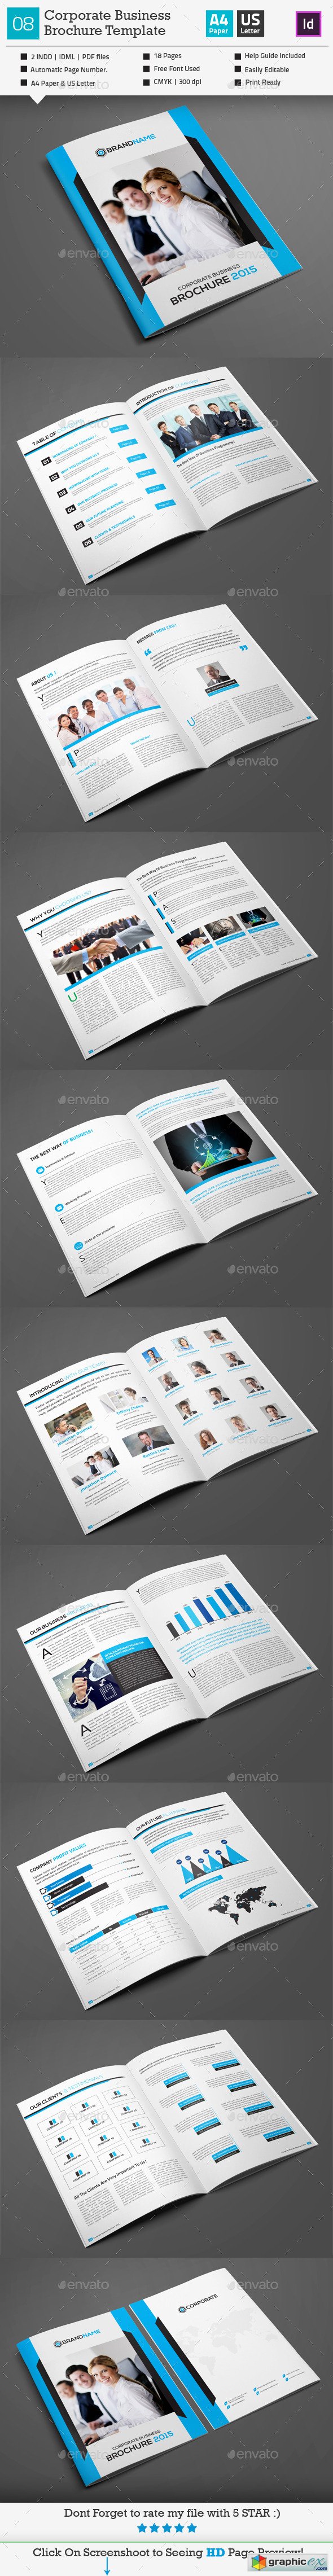 Corporate Business Brochure 08